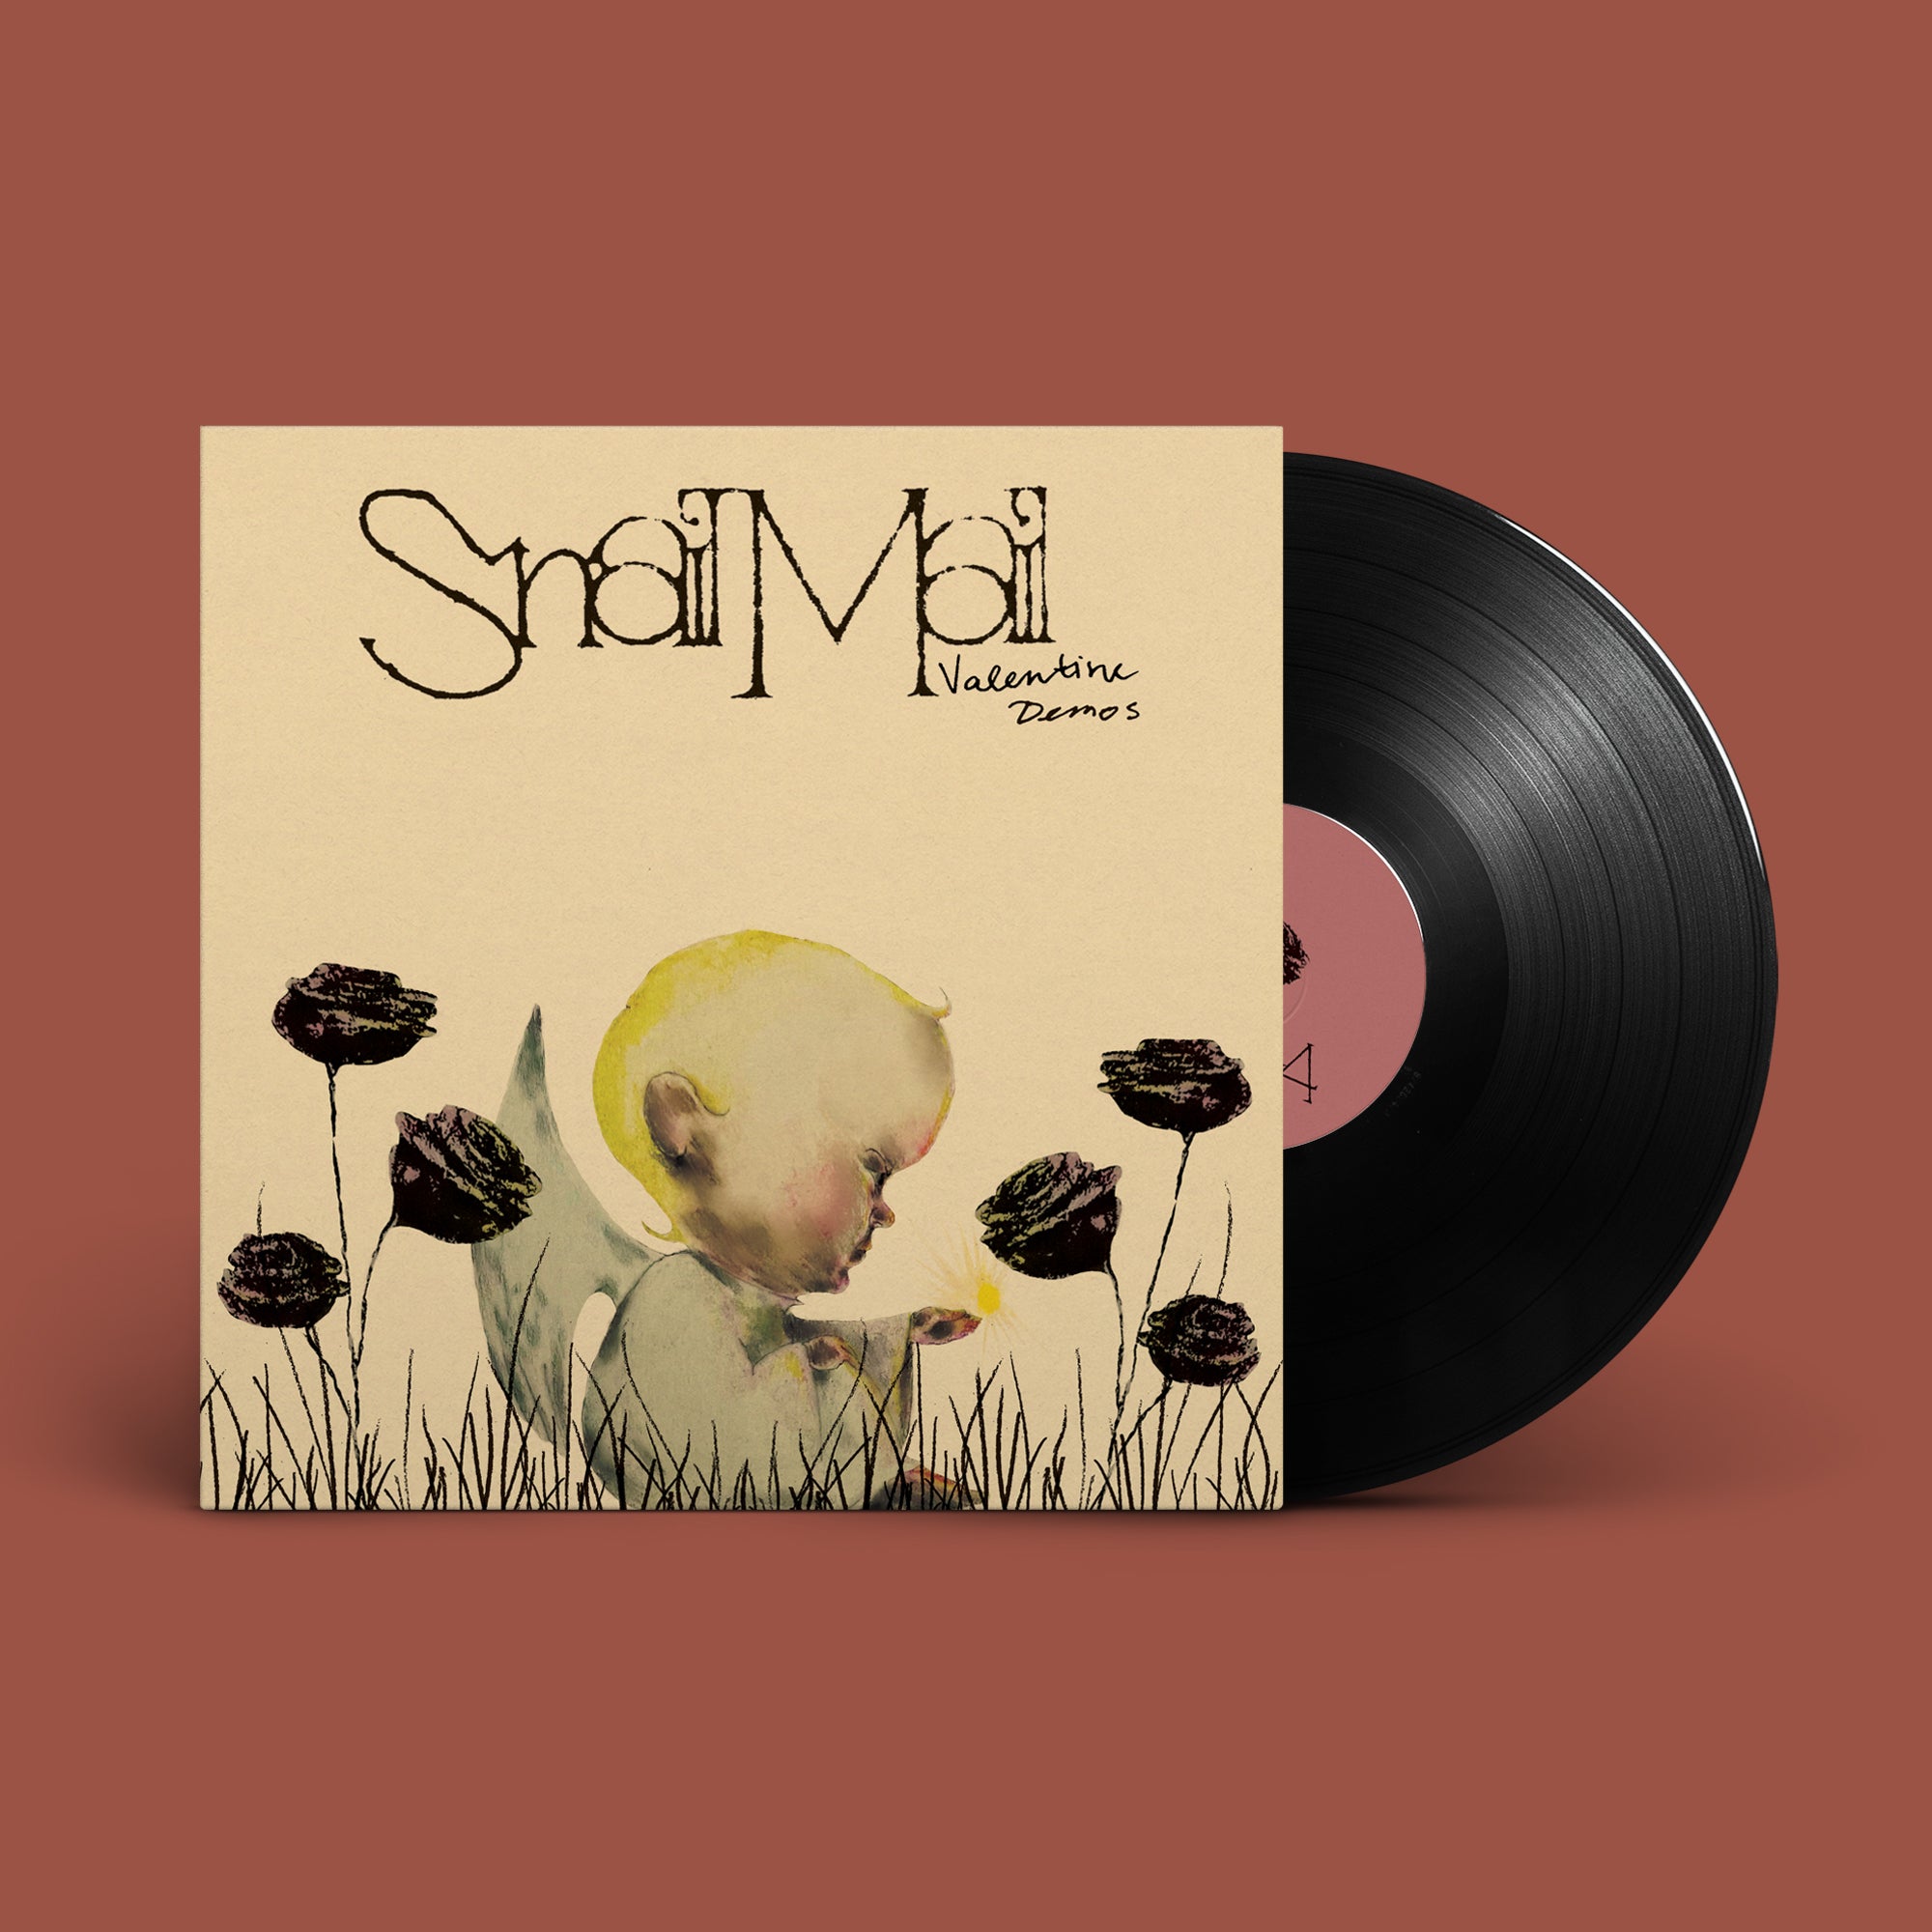 SNAIL MAIL - Valentine Demos EP - 12" EP - Vinyl